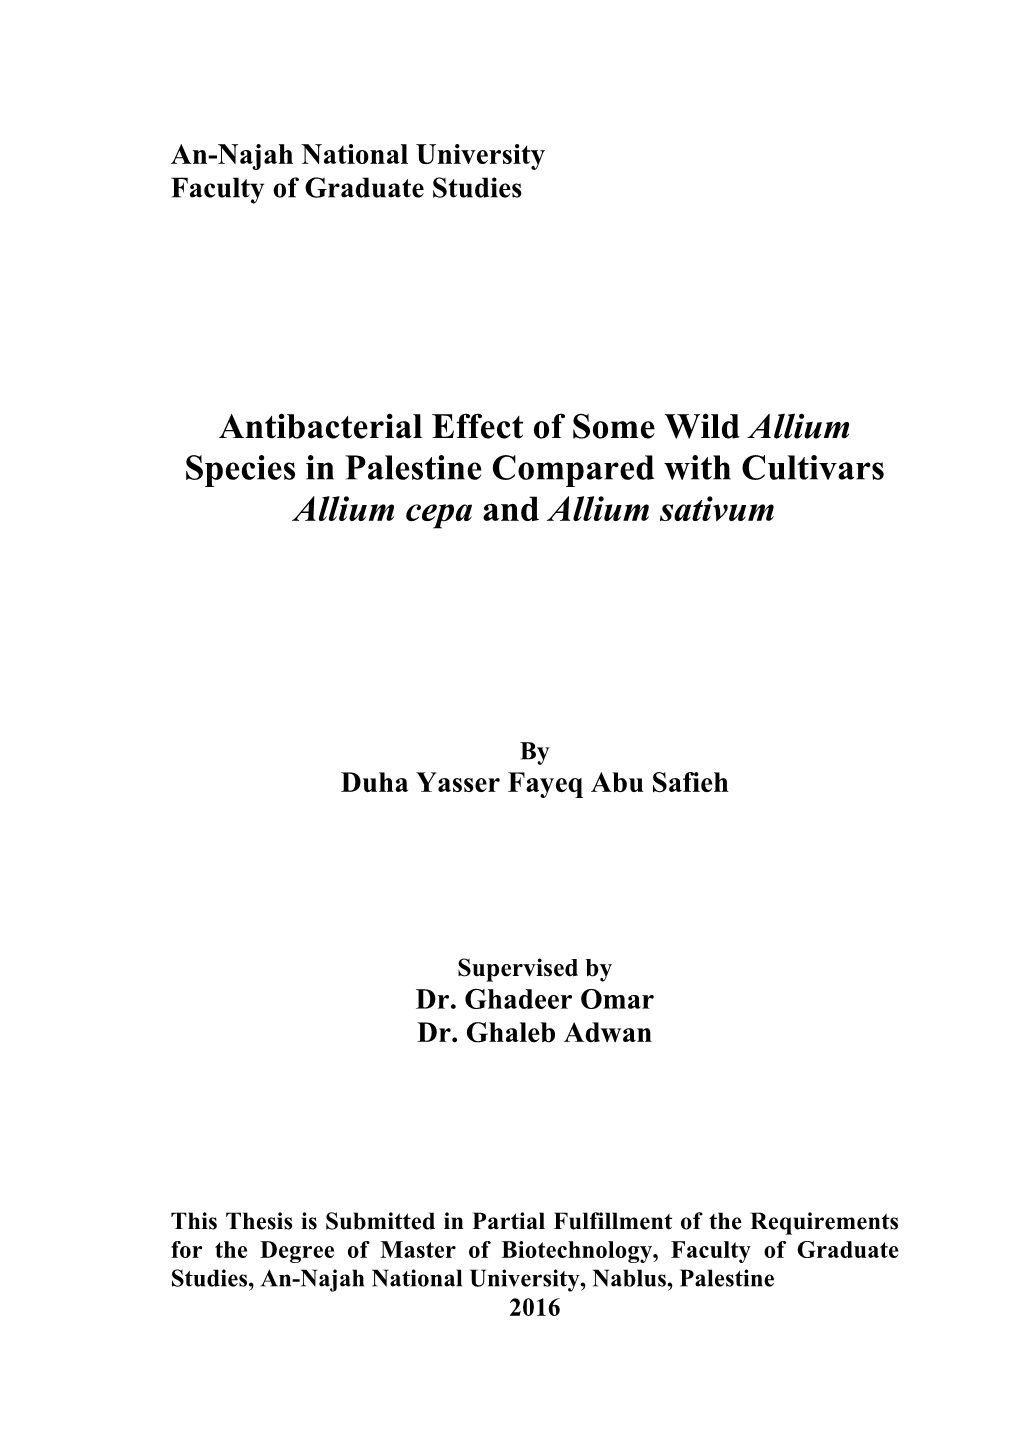 Antibacterial Effect of Some Wild Allium Species in Palestine Compared with Cultivars Allium Cepa and Allium Sativum